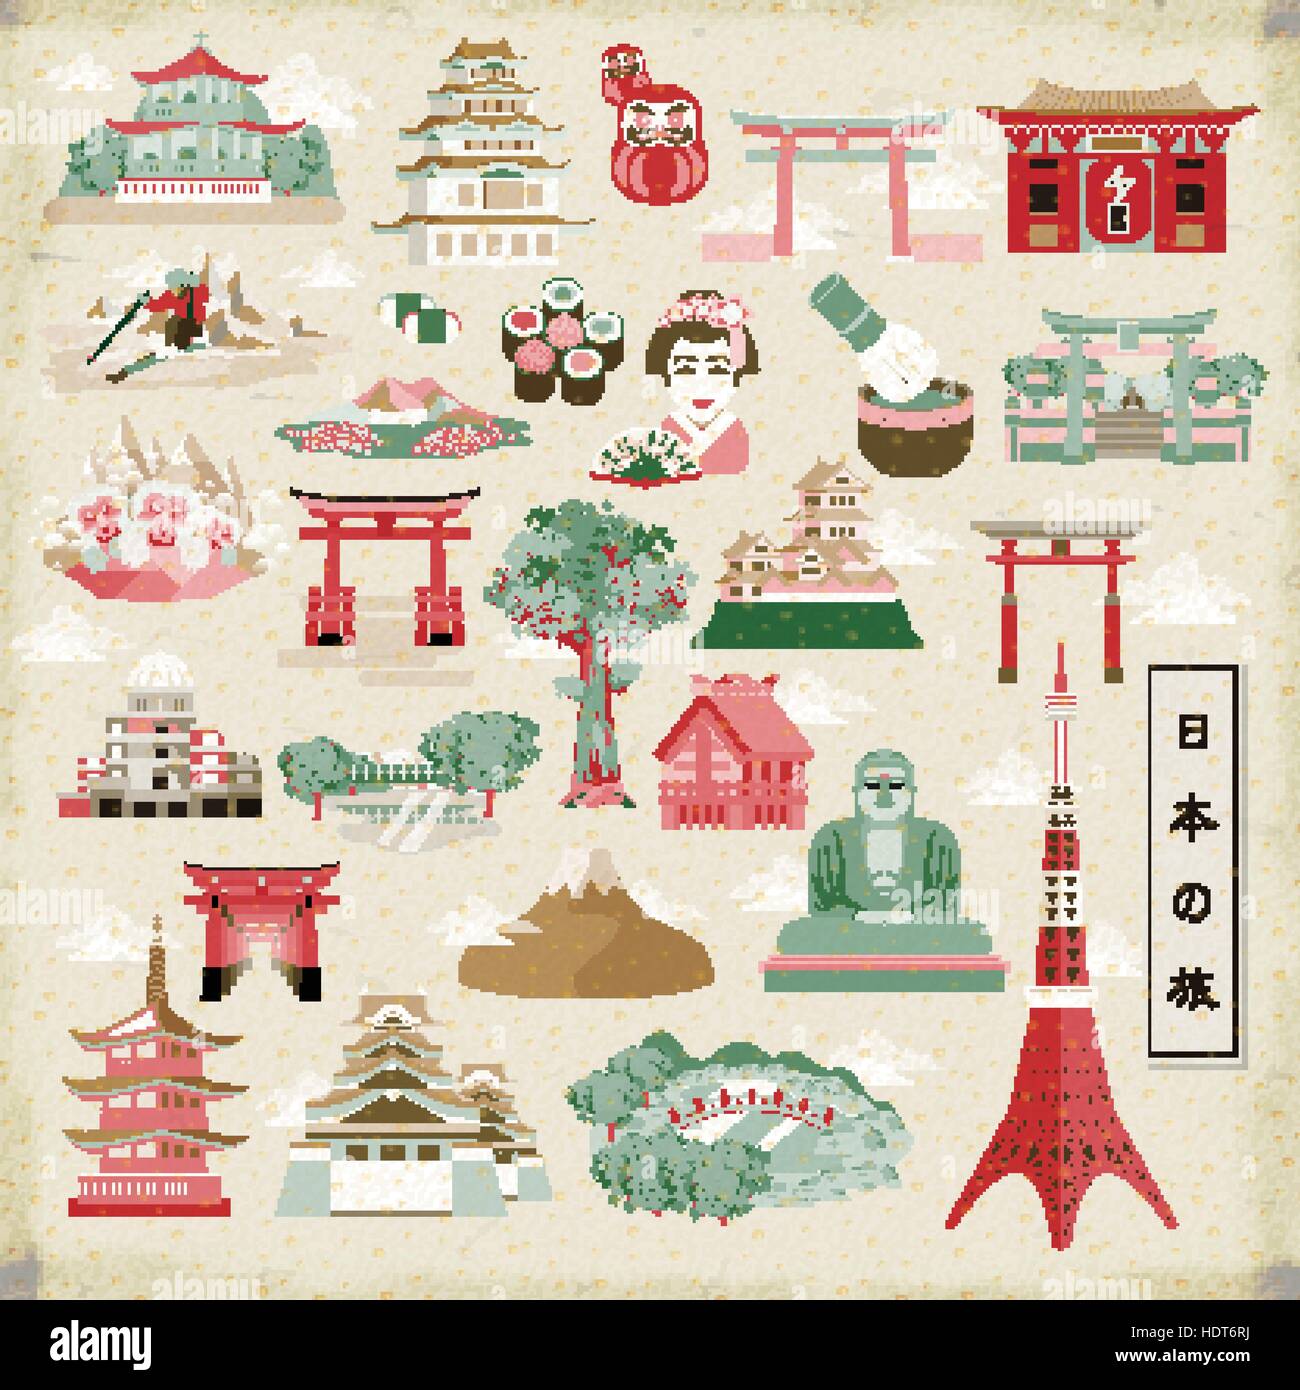 Meraviglioso viaggio Giappone collezioni - Giappone viaggi in giapponese in basso a sinistra Illustrazione Vettoriale